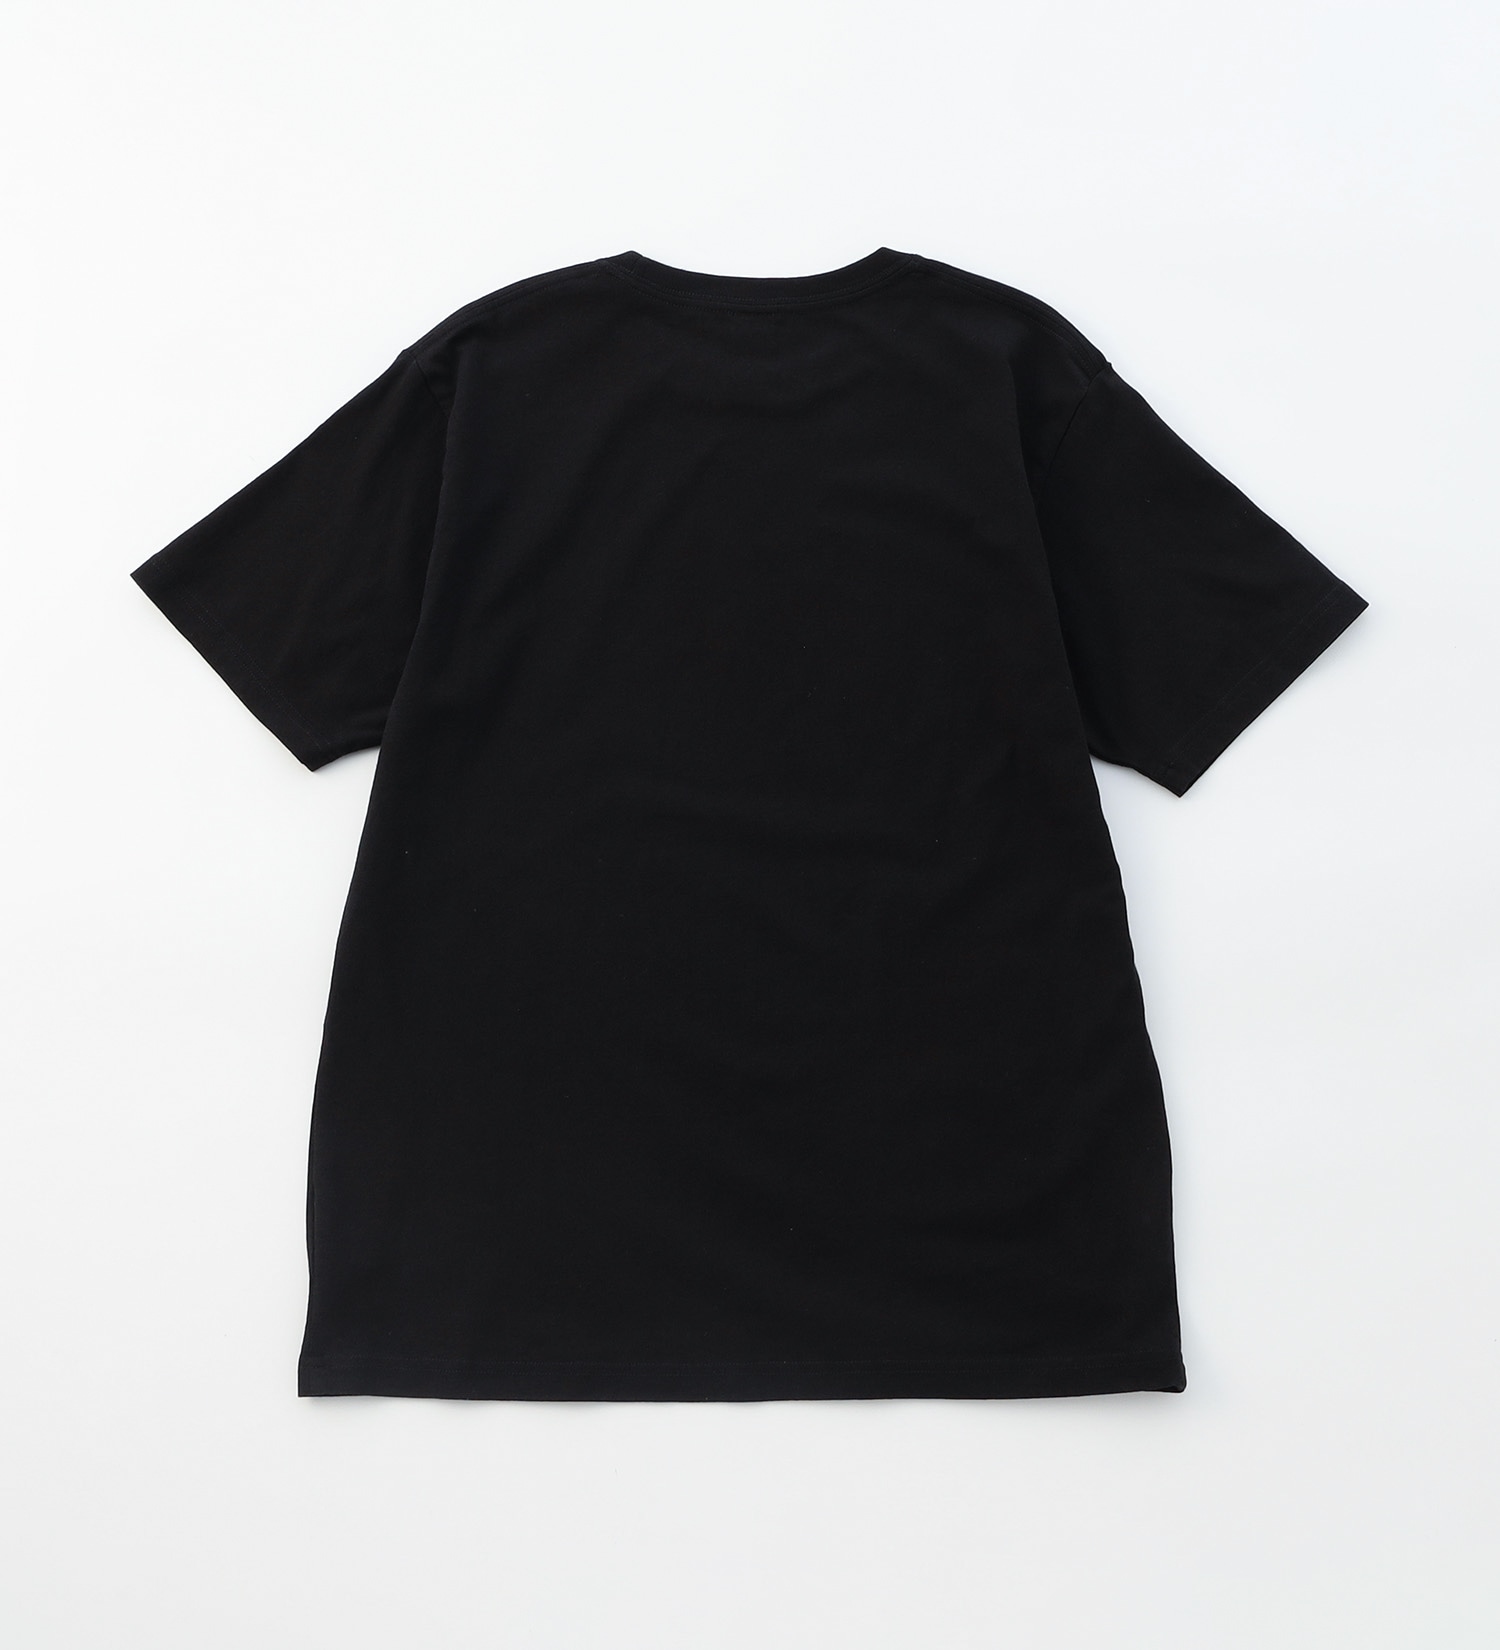 EDWIN(エドウイン)のボックスロゴプリントTシャツ 半袖【アウトレット店舗・WEB限定】|トップス/Tシャツ/カットソー/メンズ|ブラック